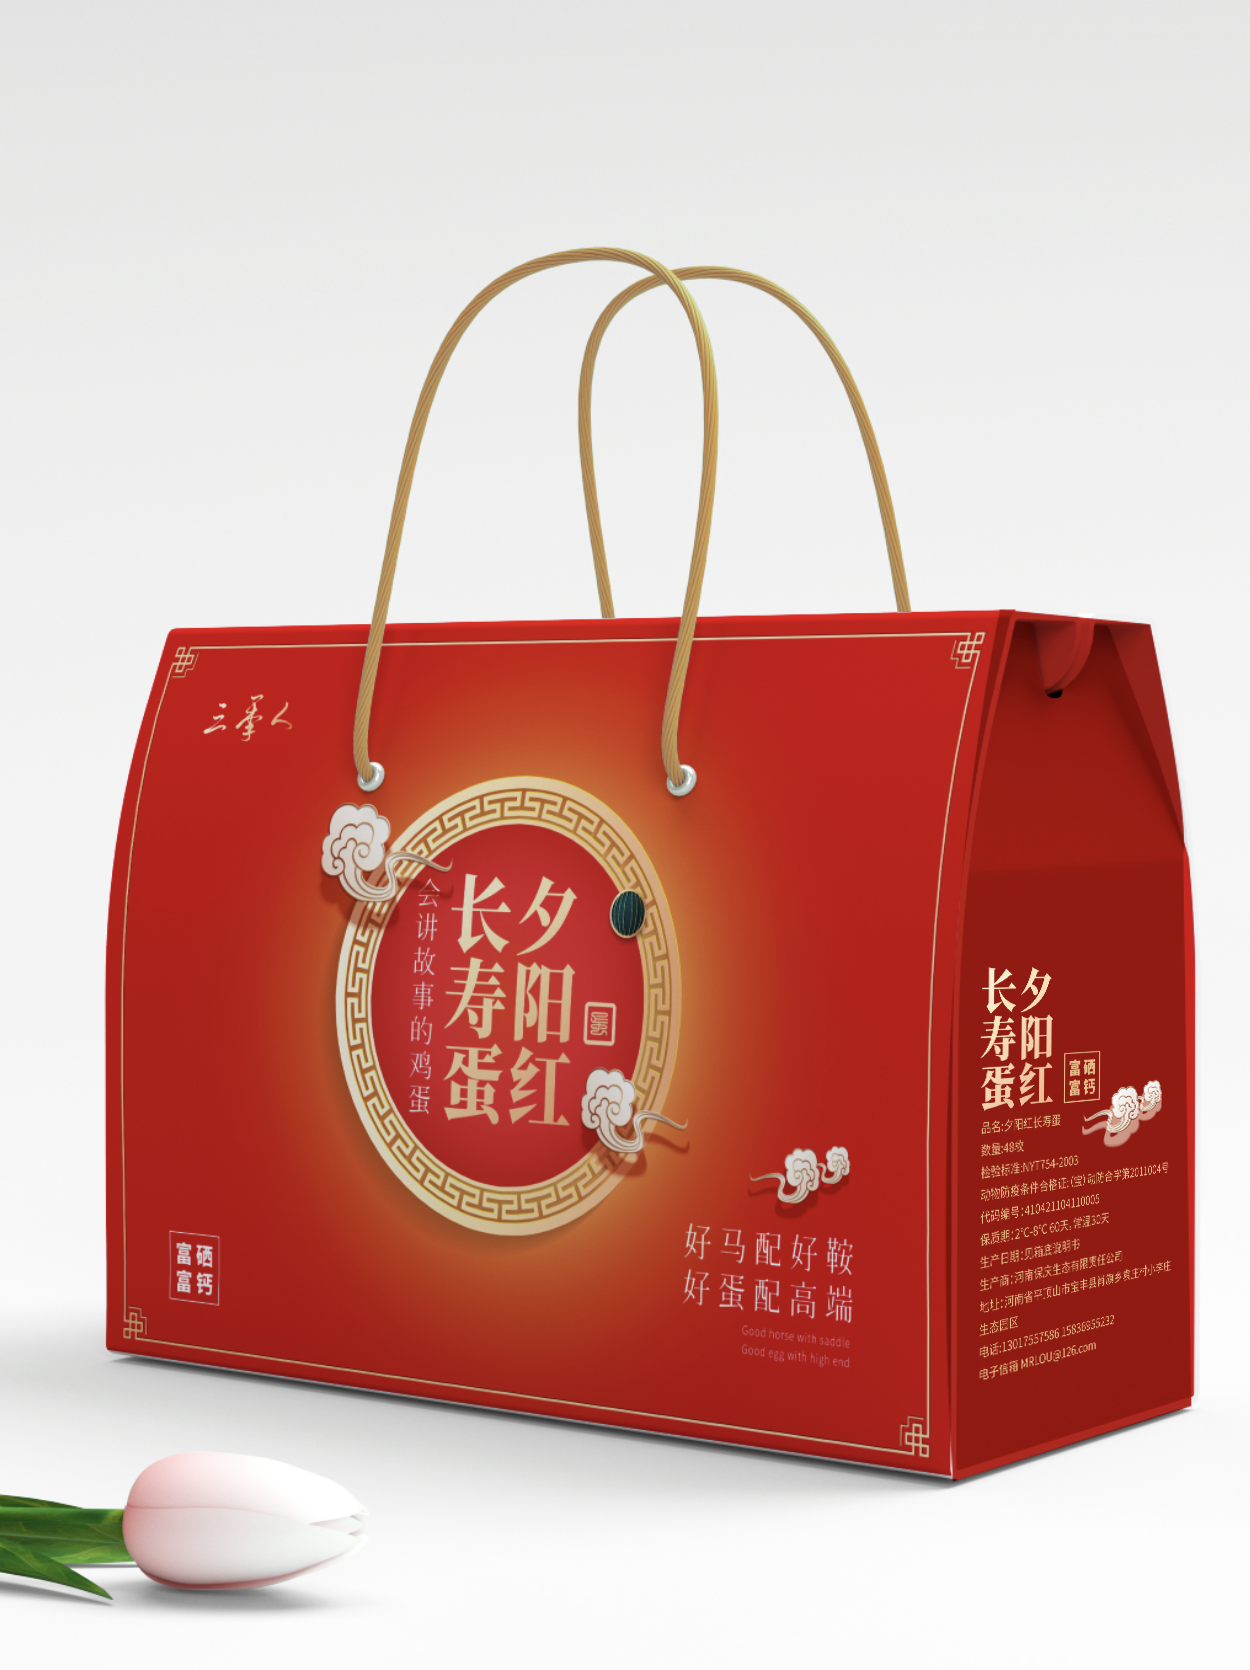 知名青海礼盒包装设计公司案例TOP前五名单发布 